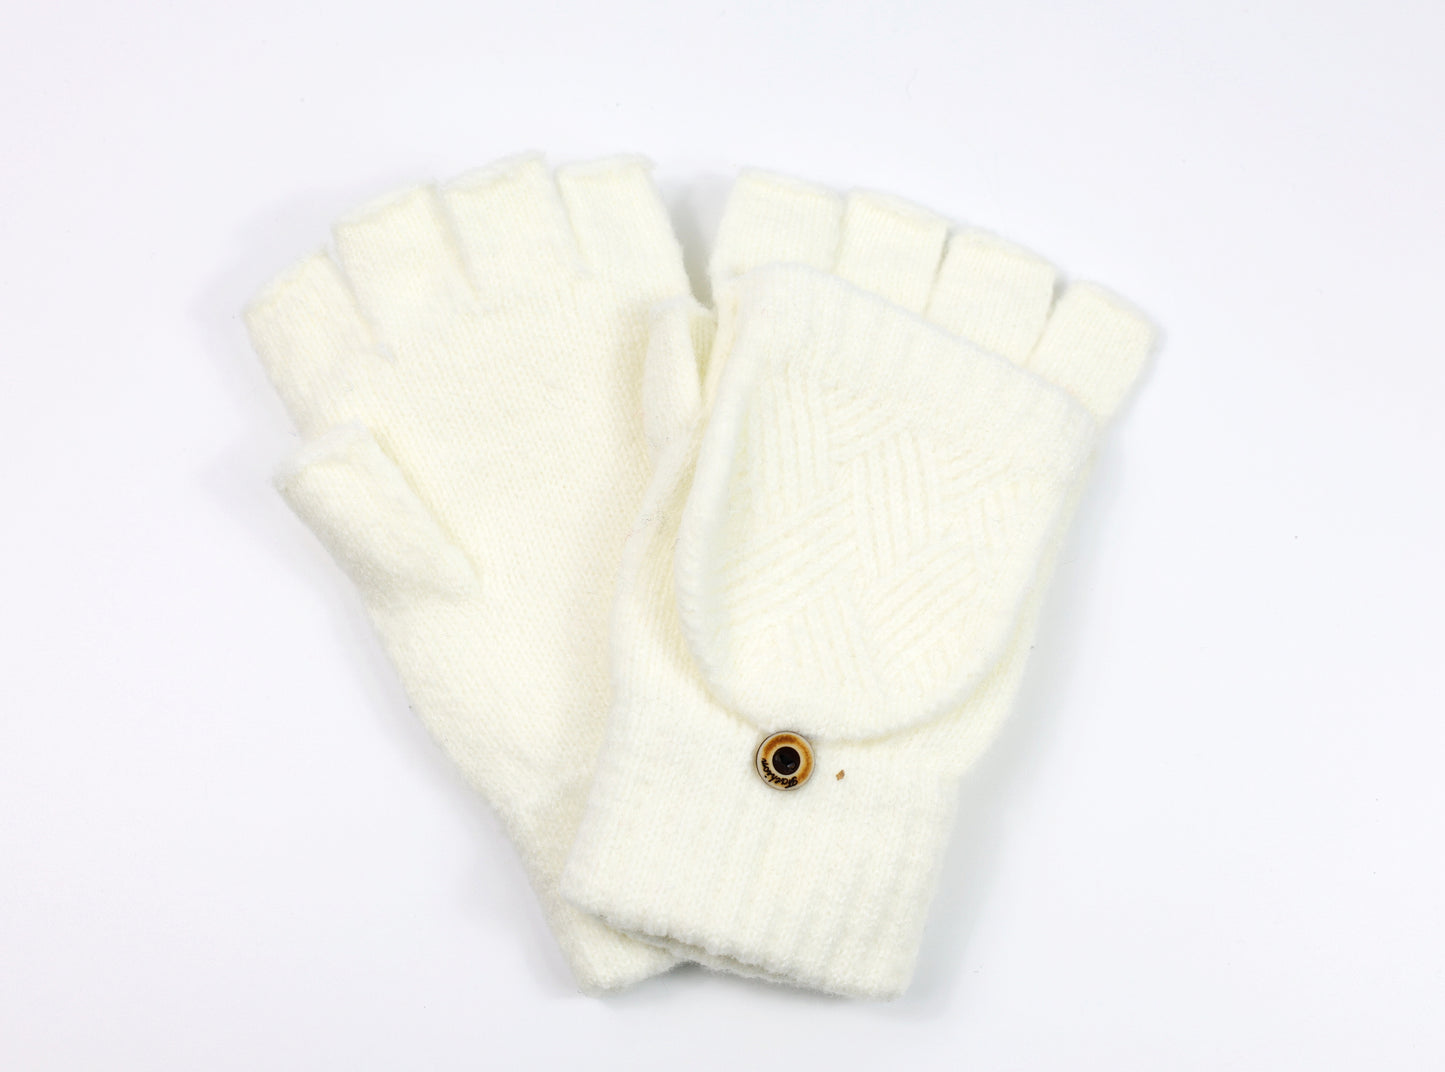 Fingerless Gloves Winter Convertible Mittens